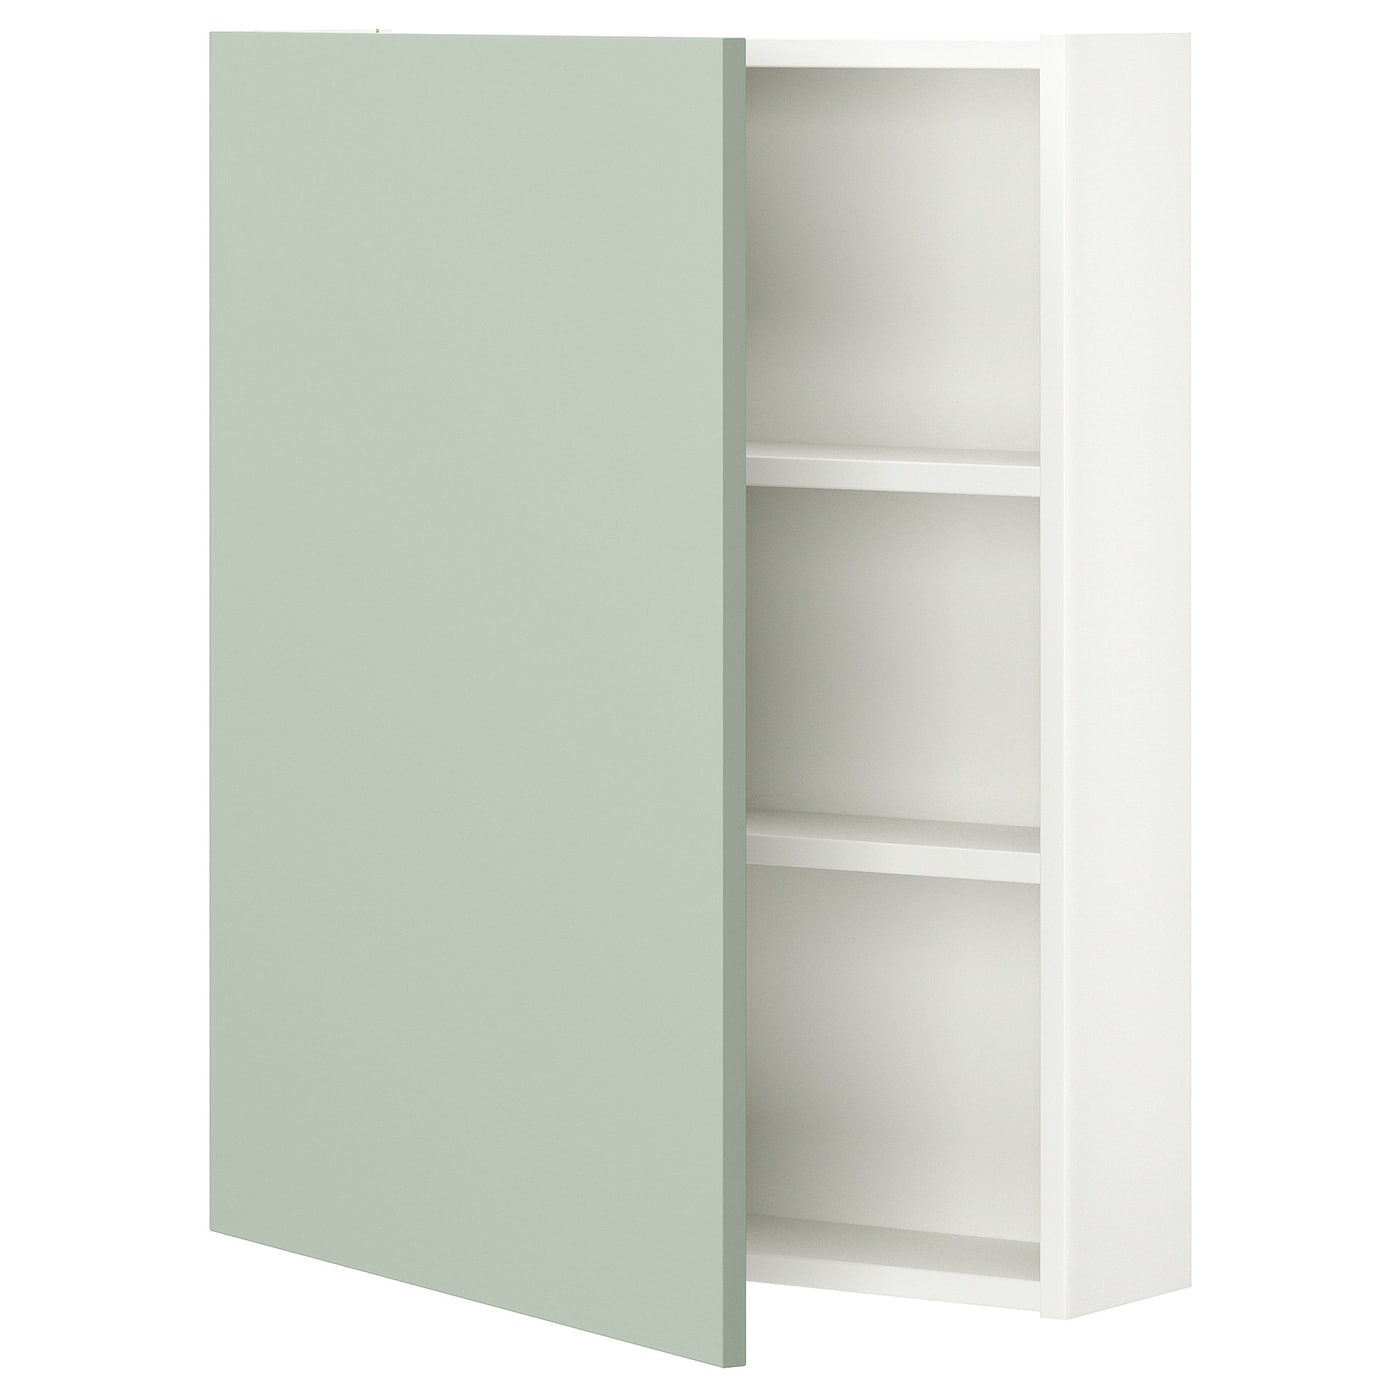 Навесной шкаф с 2 полками/дверью - IKEA ENHET/ЭНХЕТ ИКЕА, 75х17х60 см, белый/зеленый